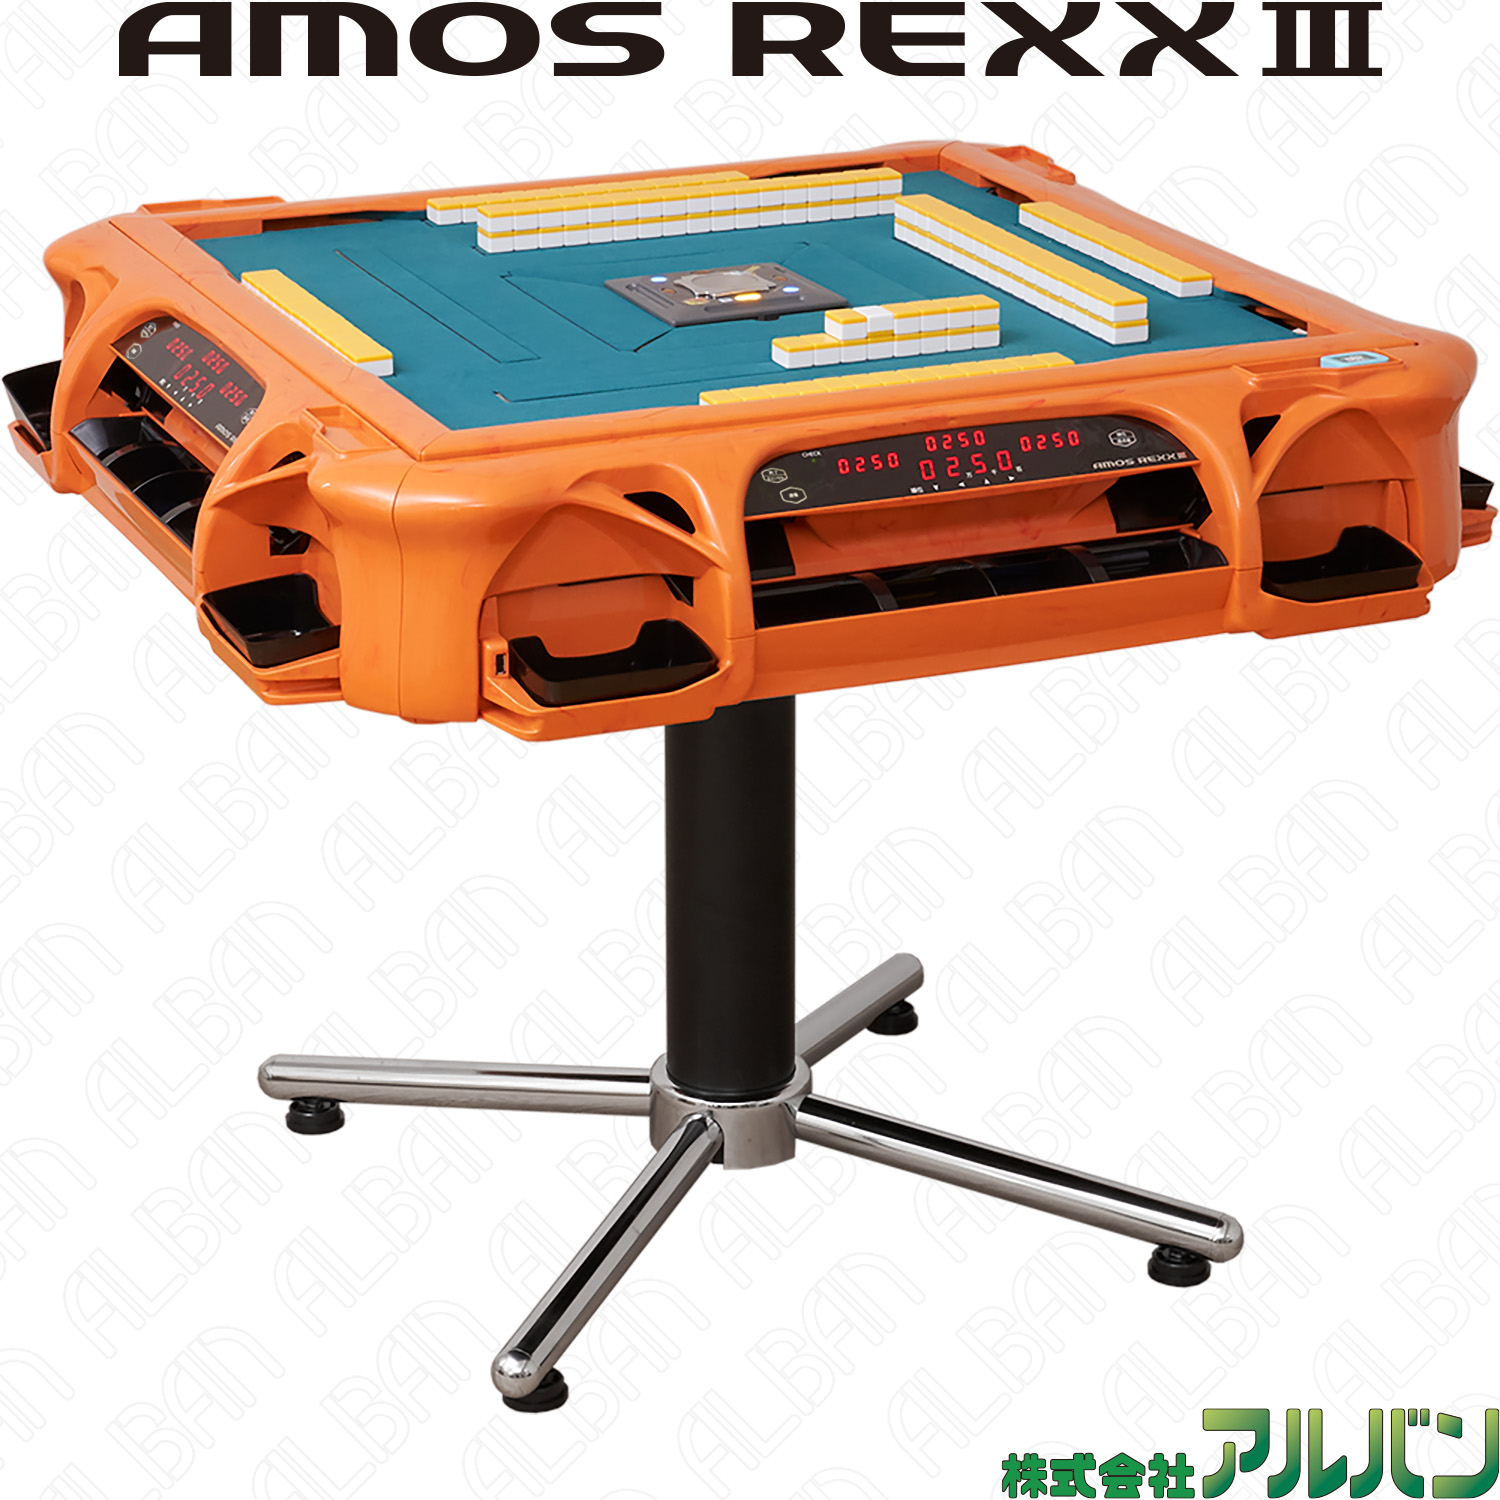 業務用全自動麻雀卓「アモスレックス3 / AMOS REXX Ⅲ」【オレンジ 